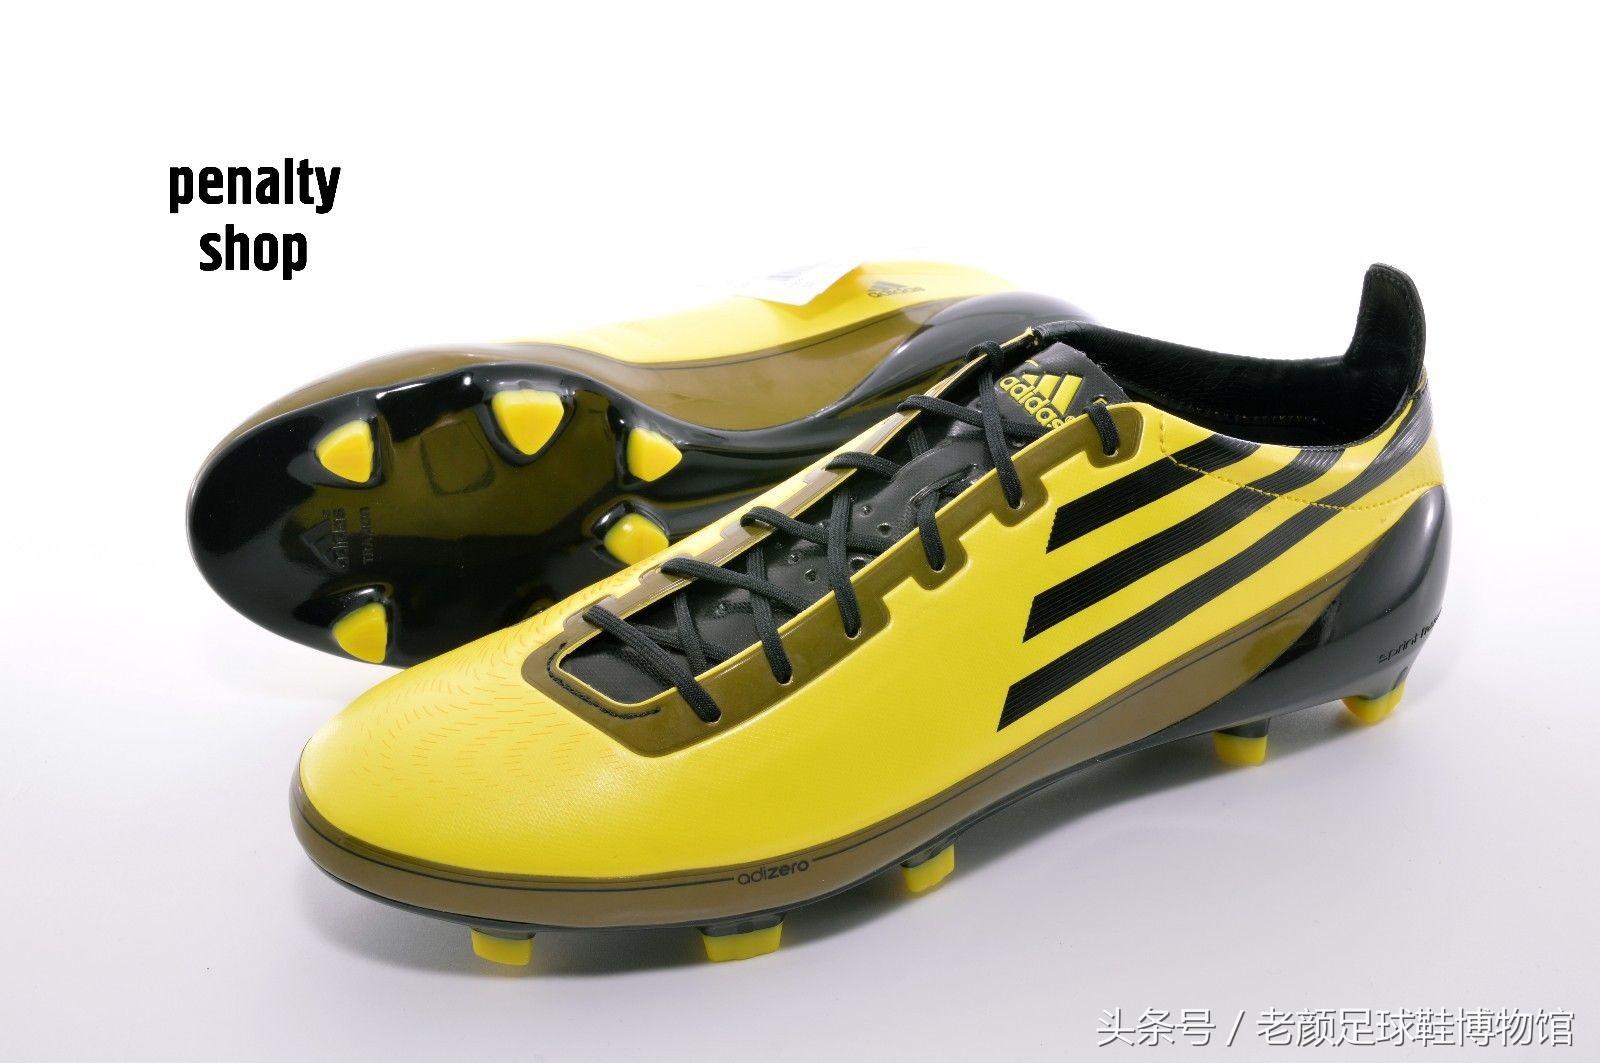 世界杯刺客足球鞋(南非世界杯阿迪达斯战靴回顾，德容飞踹阿隆索，卡卡三名垂青史)